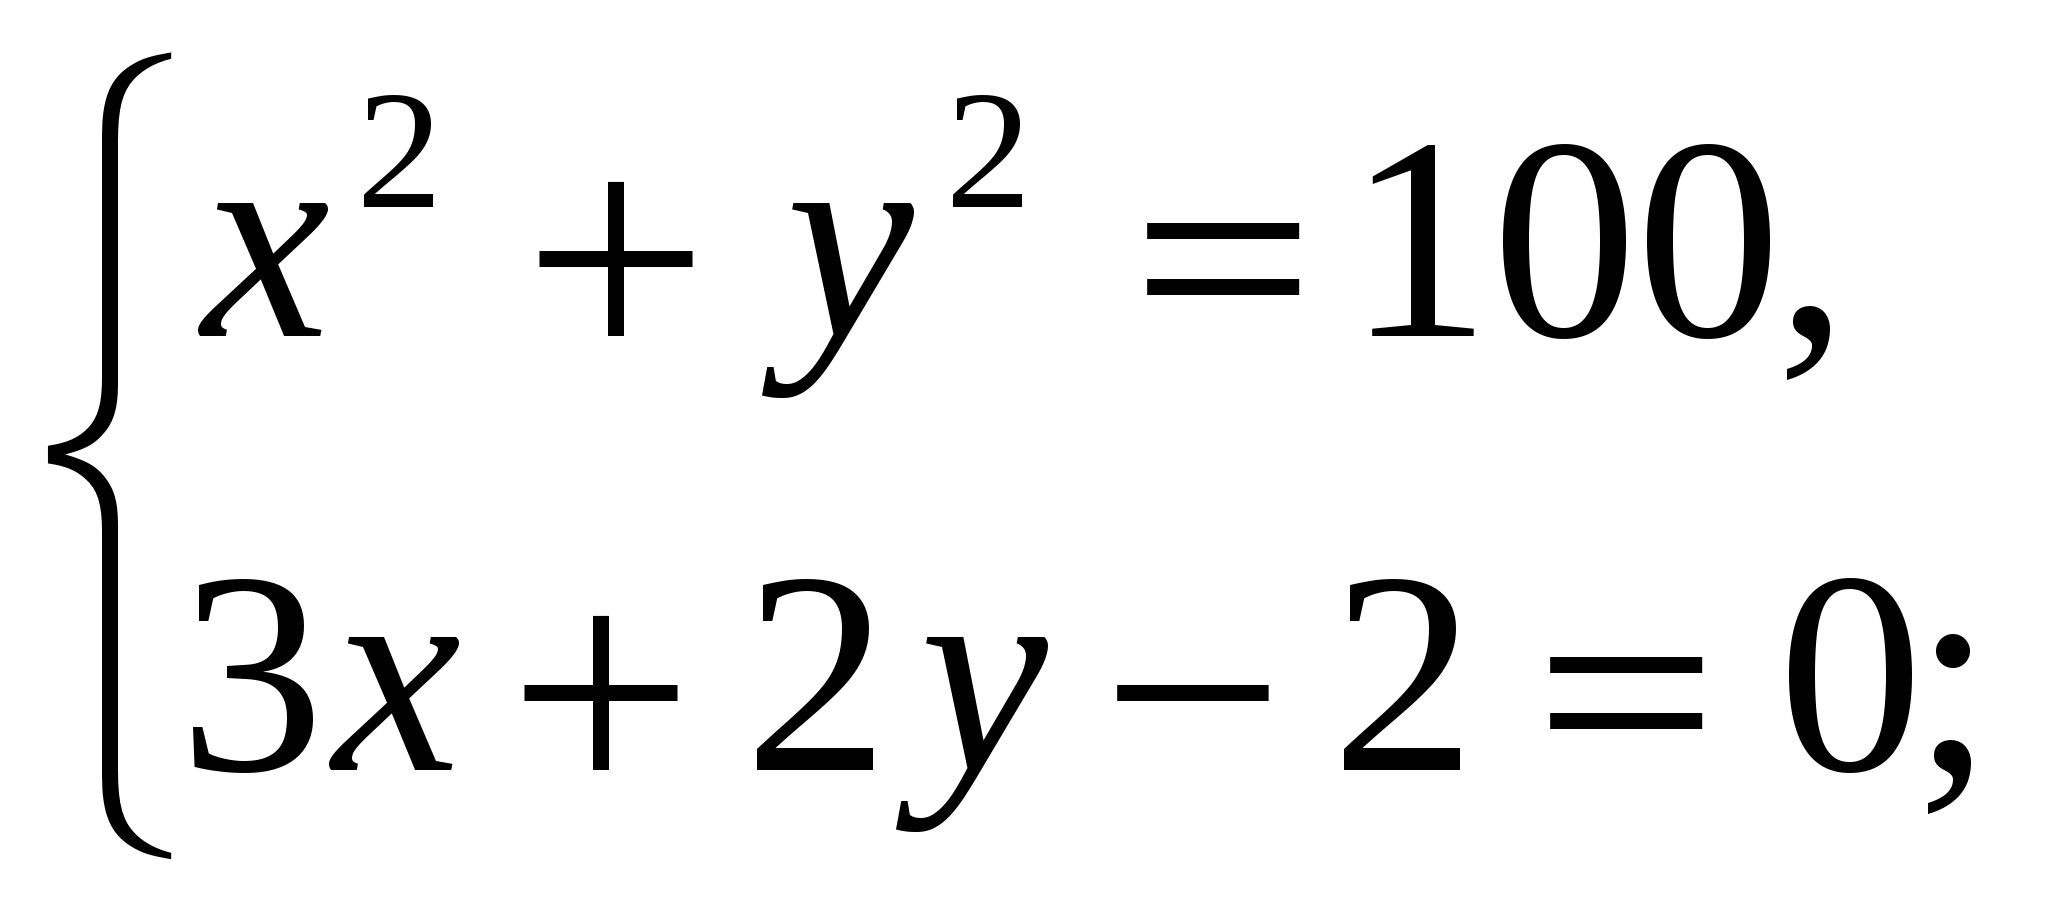 Урок алгебры в 9 классе по теме Системы уравнений